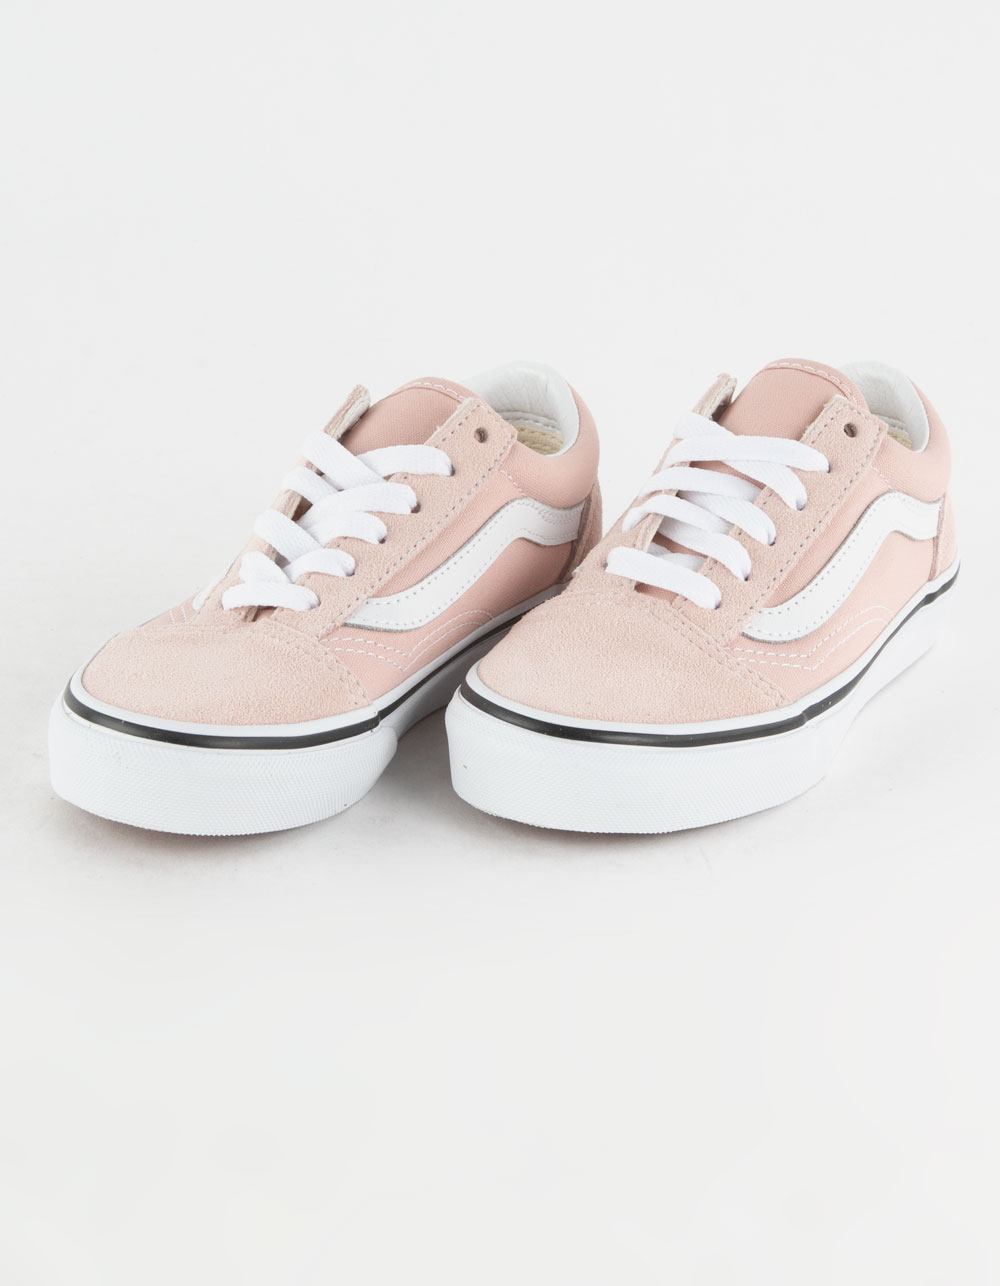 Buy Vans Shoes For Baby Girl online